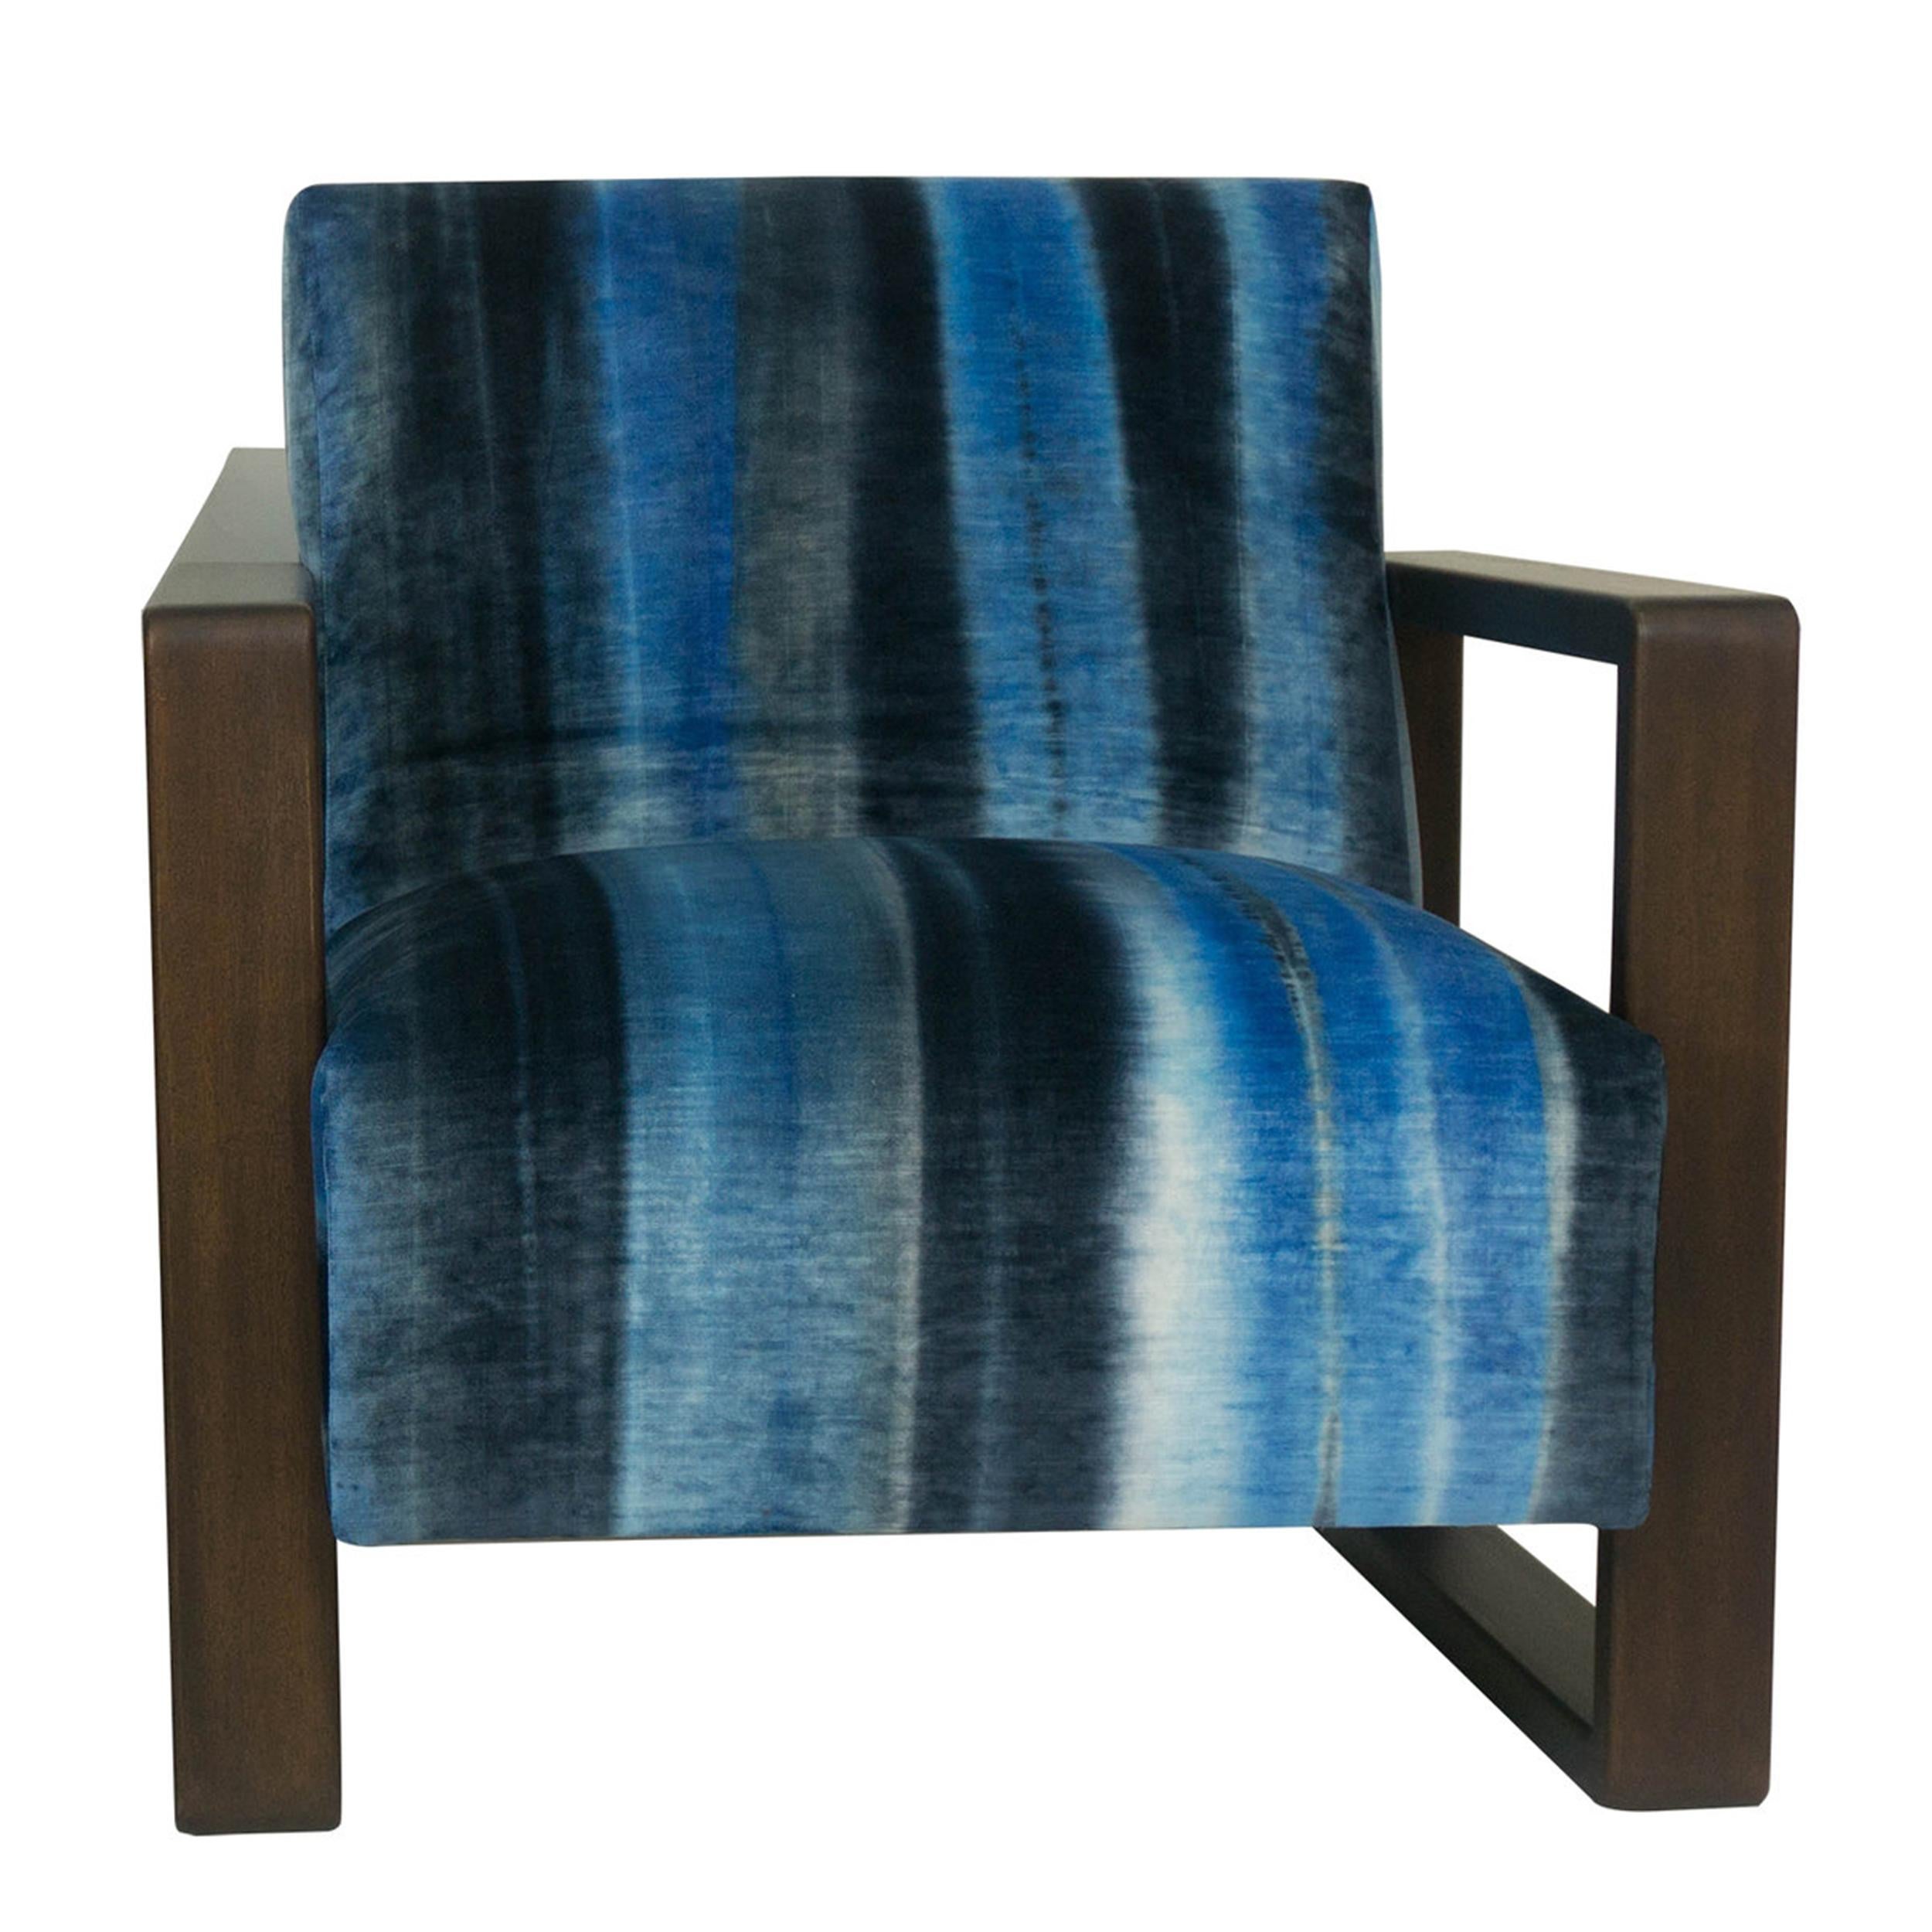 Gepolsterter Lounge-Sessel mit modernem, offenem, quadratischem Fuß und Armlehnen in braunem Mahagoni. Stoff und Holzausführung können individuell angepasst werden. Gestrichen oder gebeizt. 

Abmessungen:
Gesamt: 33 